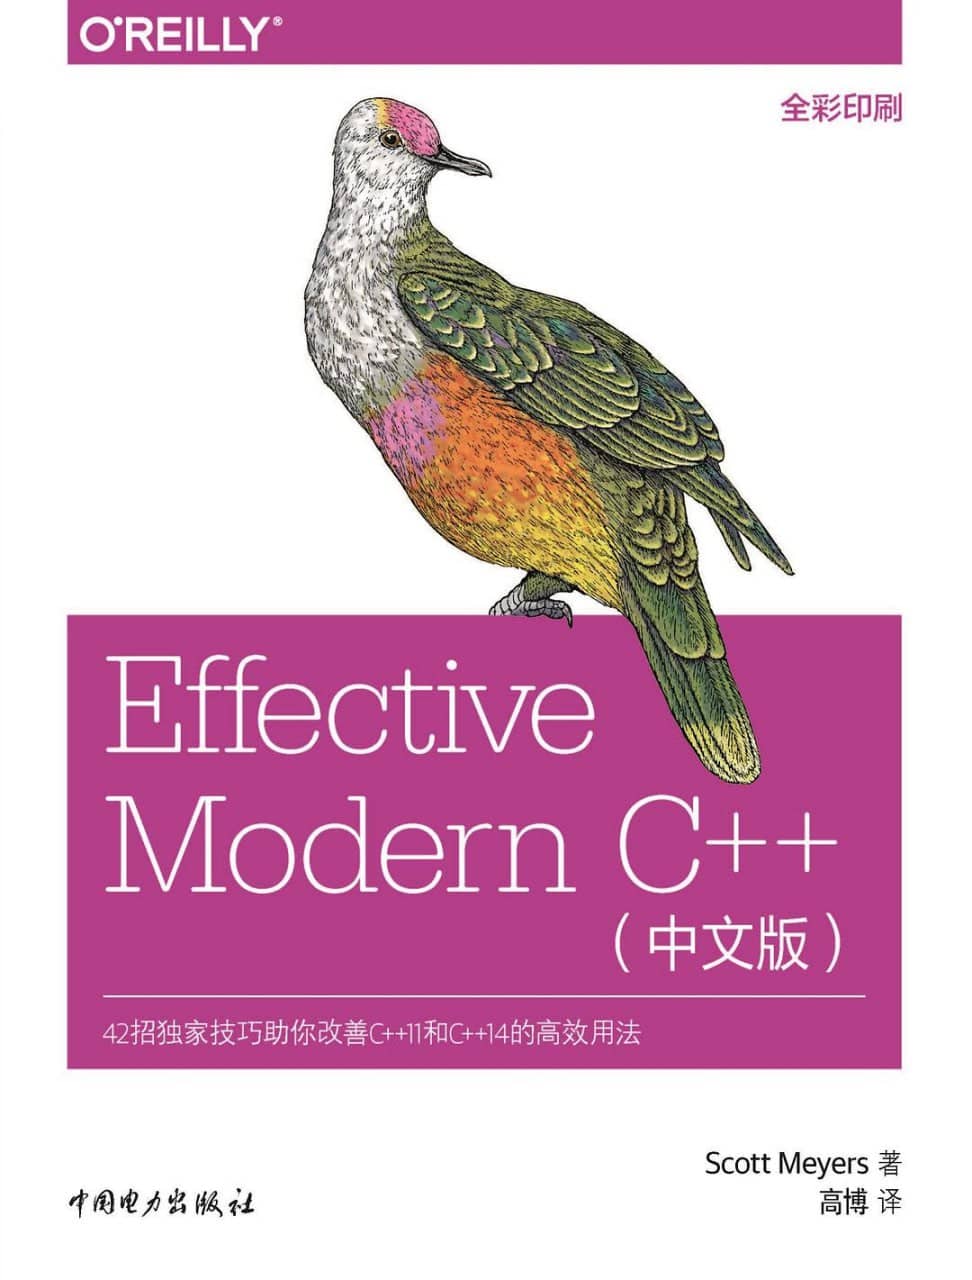 《Effective Modern C++ 简体中文版》高清PDF电子书